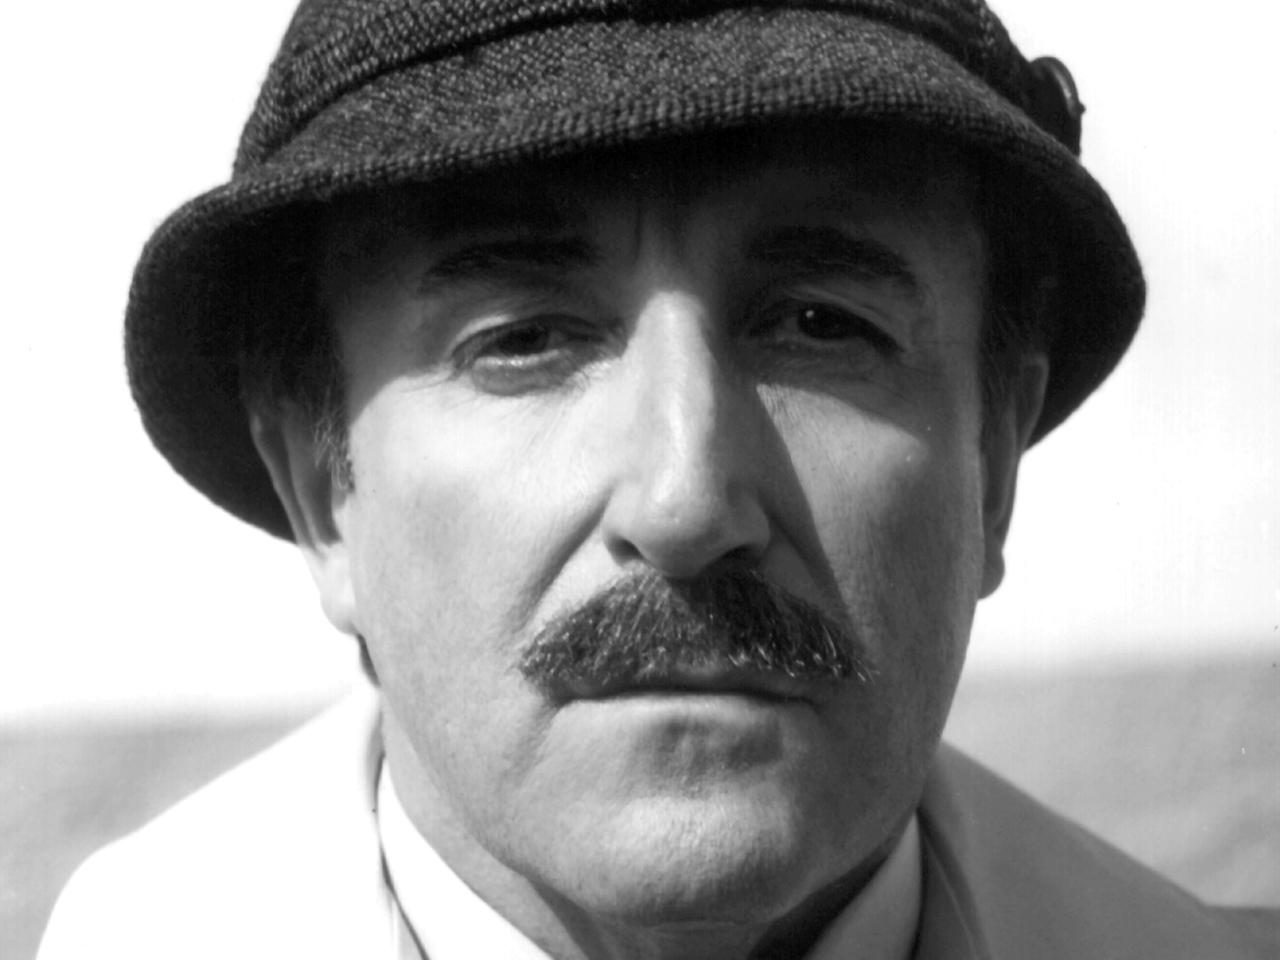 Der britische Schauspieler Peter Sellers als Inspektor Clouseau in dem Film "Trail Of The Pink Panther", aufgenommen 1982. Sellers galt als der größte britische Komiker seiner Zeit.